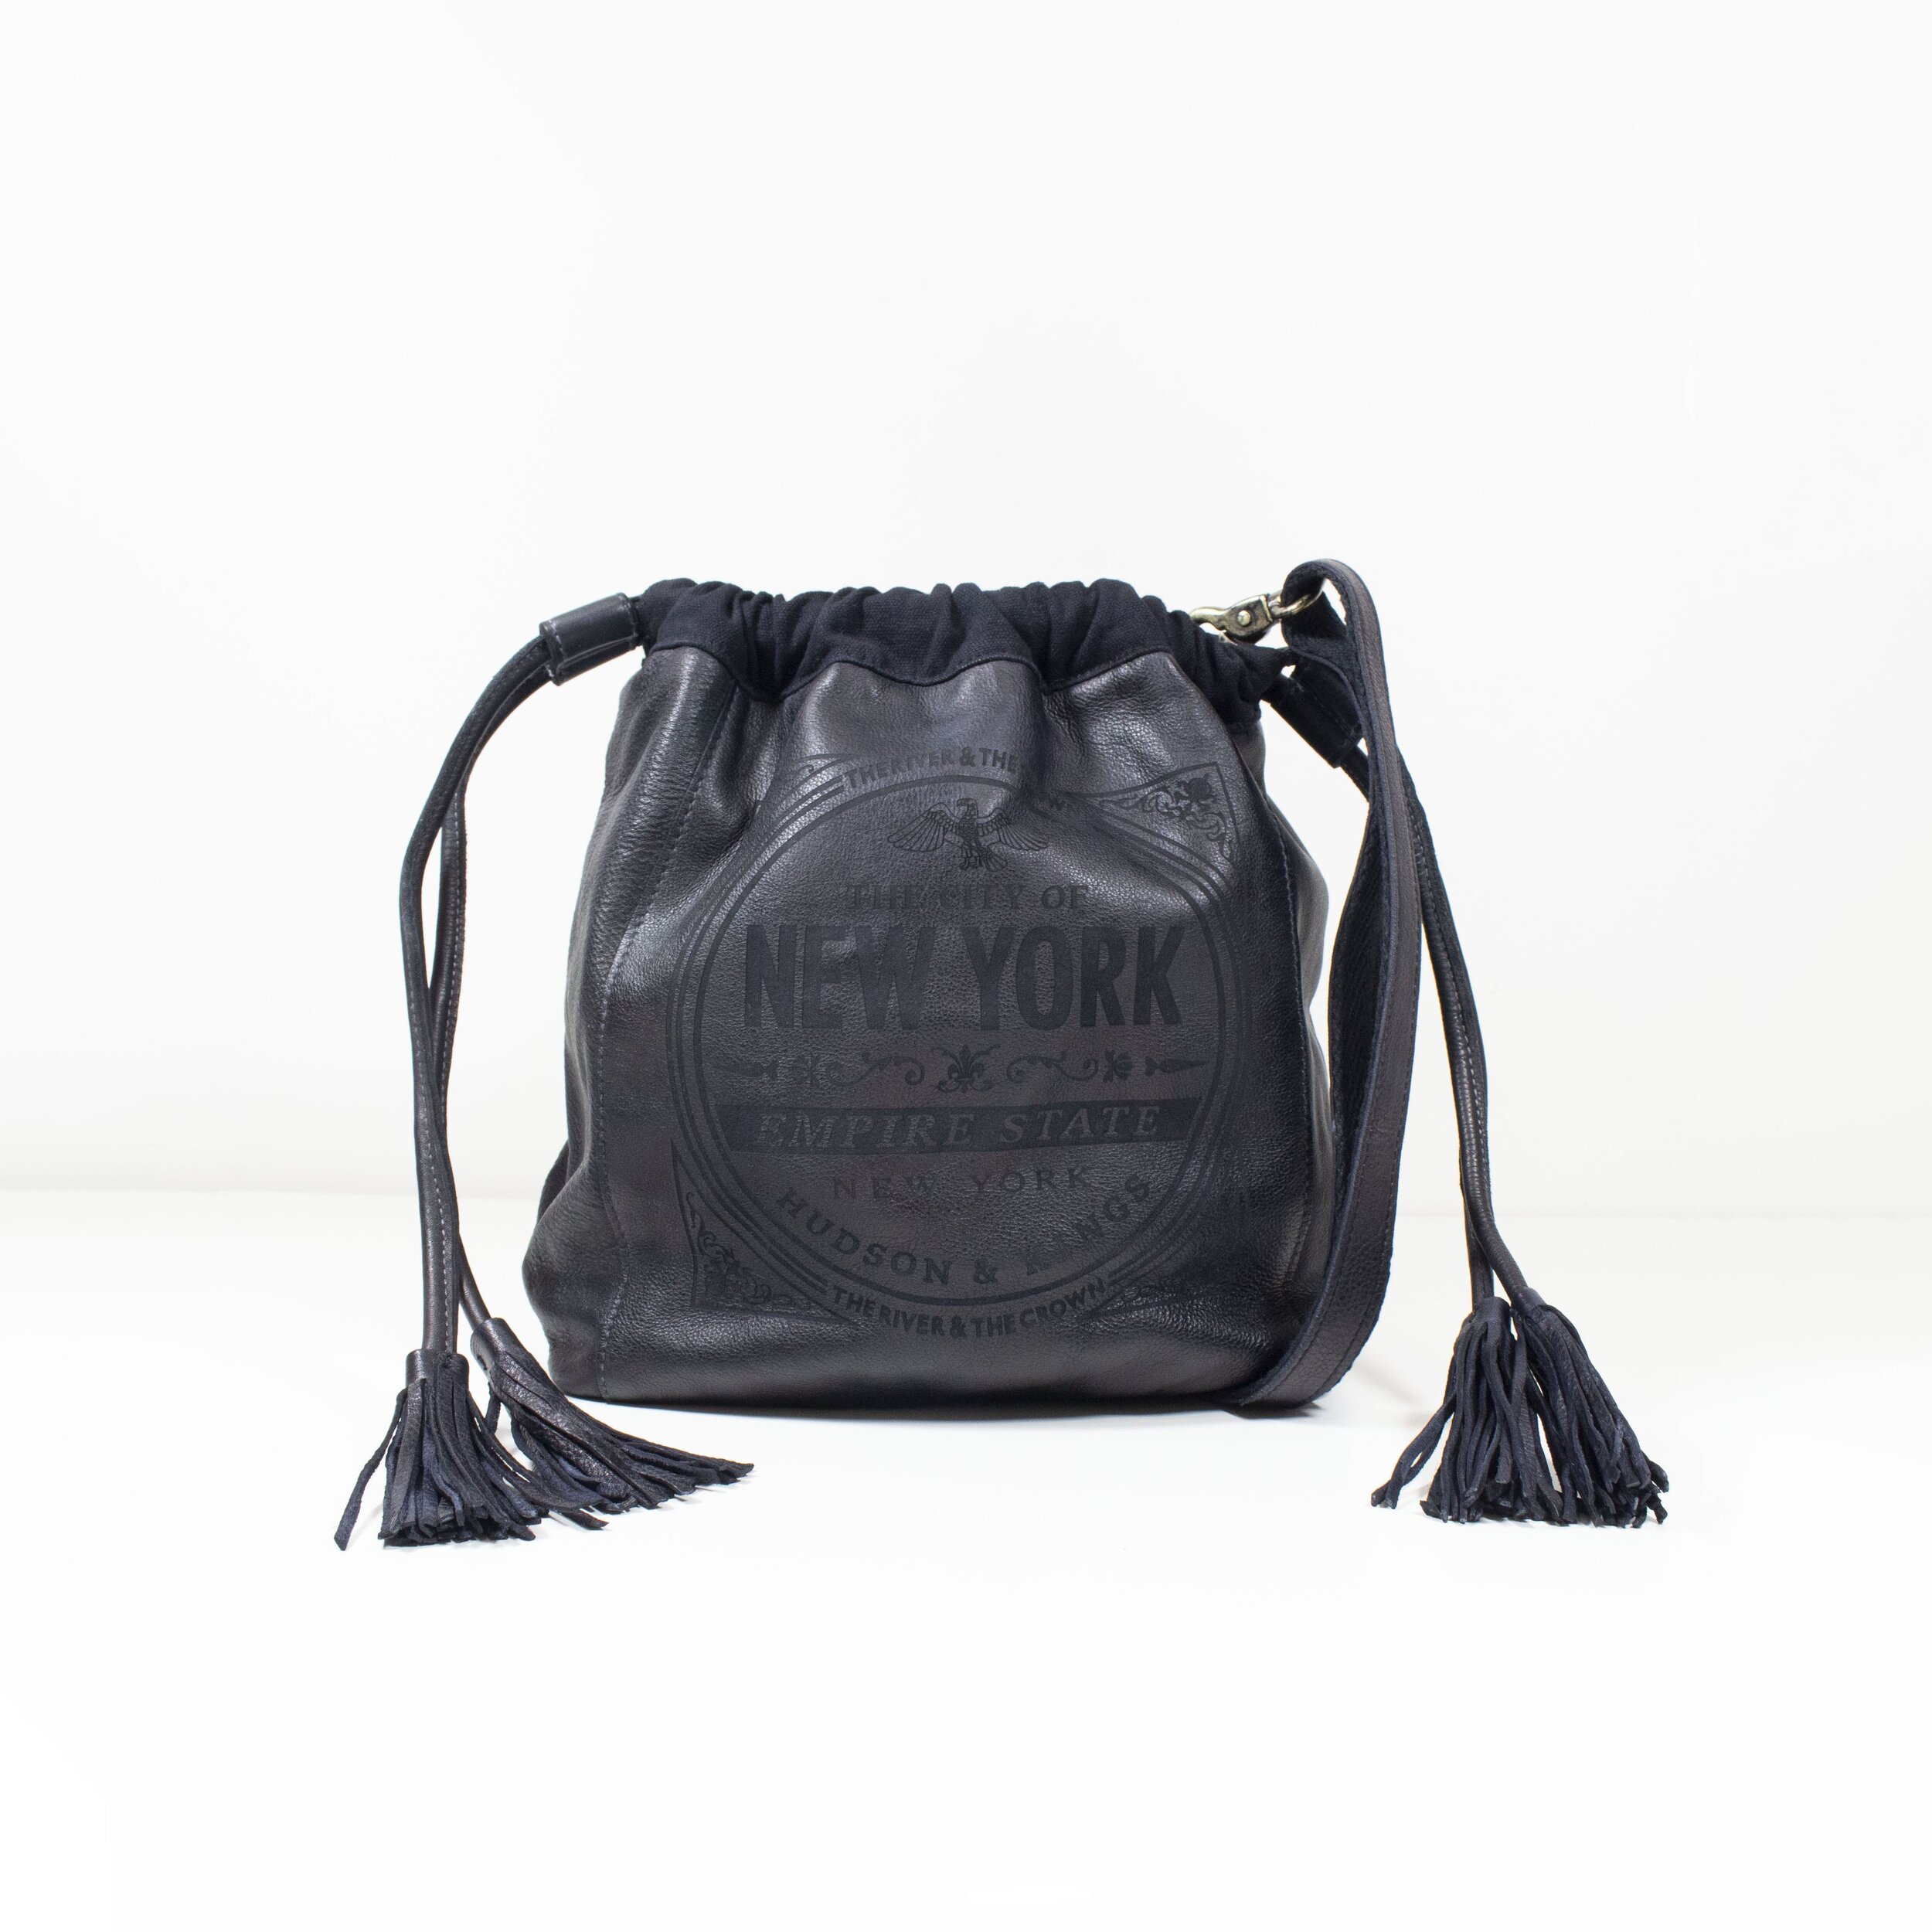 black tote crossbody bag